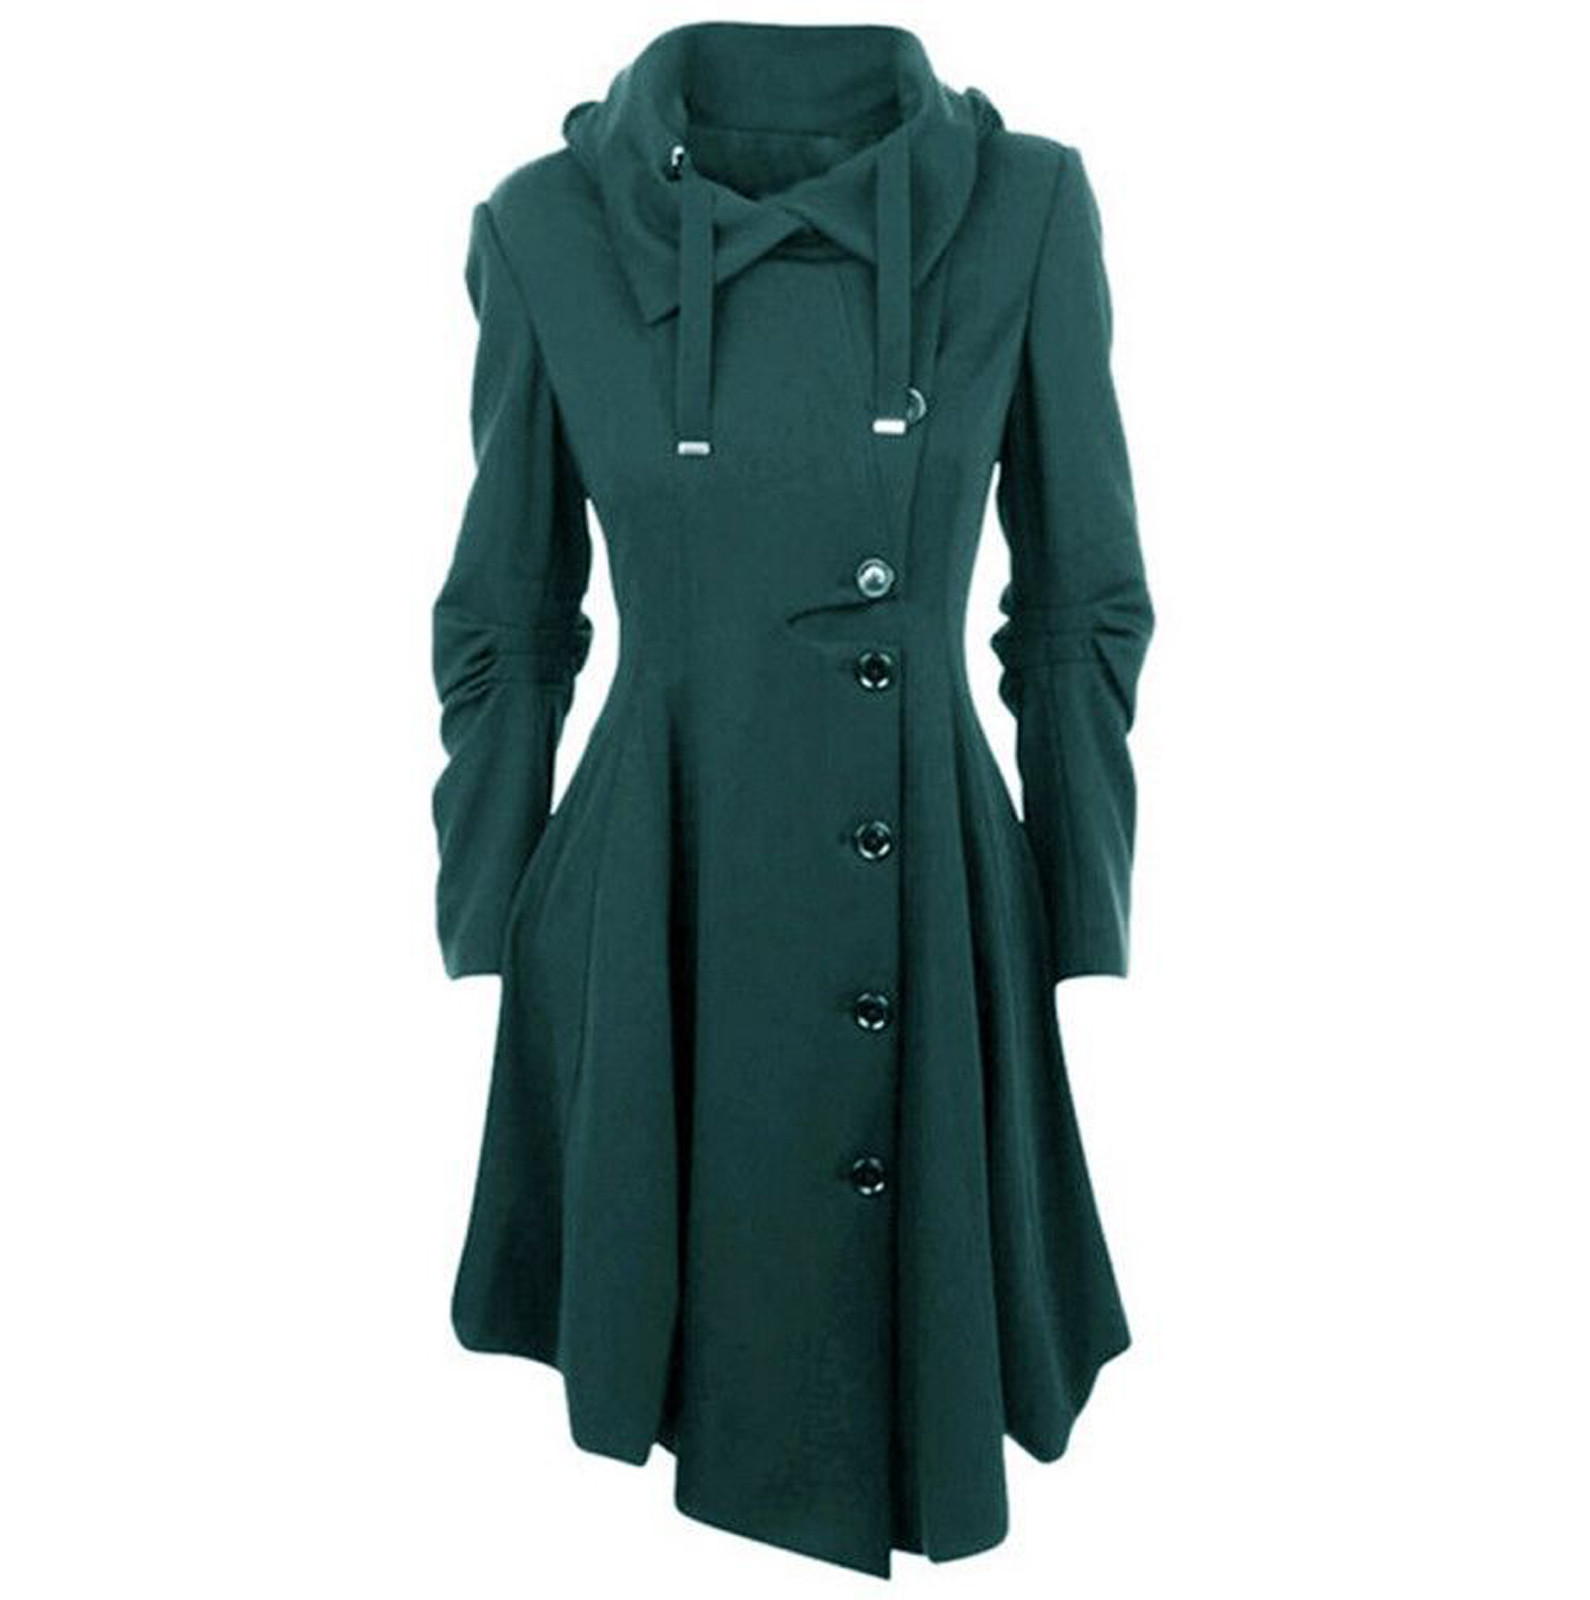 Bescita Women Faux Wool Warm Slim Coat Jacket Thick-Parka Overcoat Long Winter Outwear - image 1 of 4